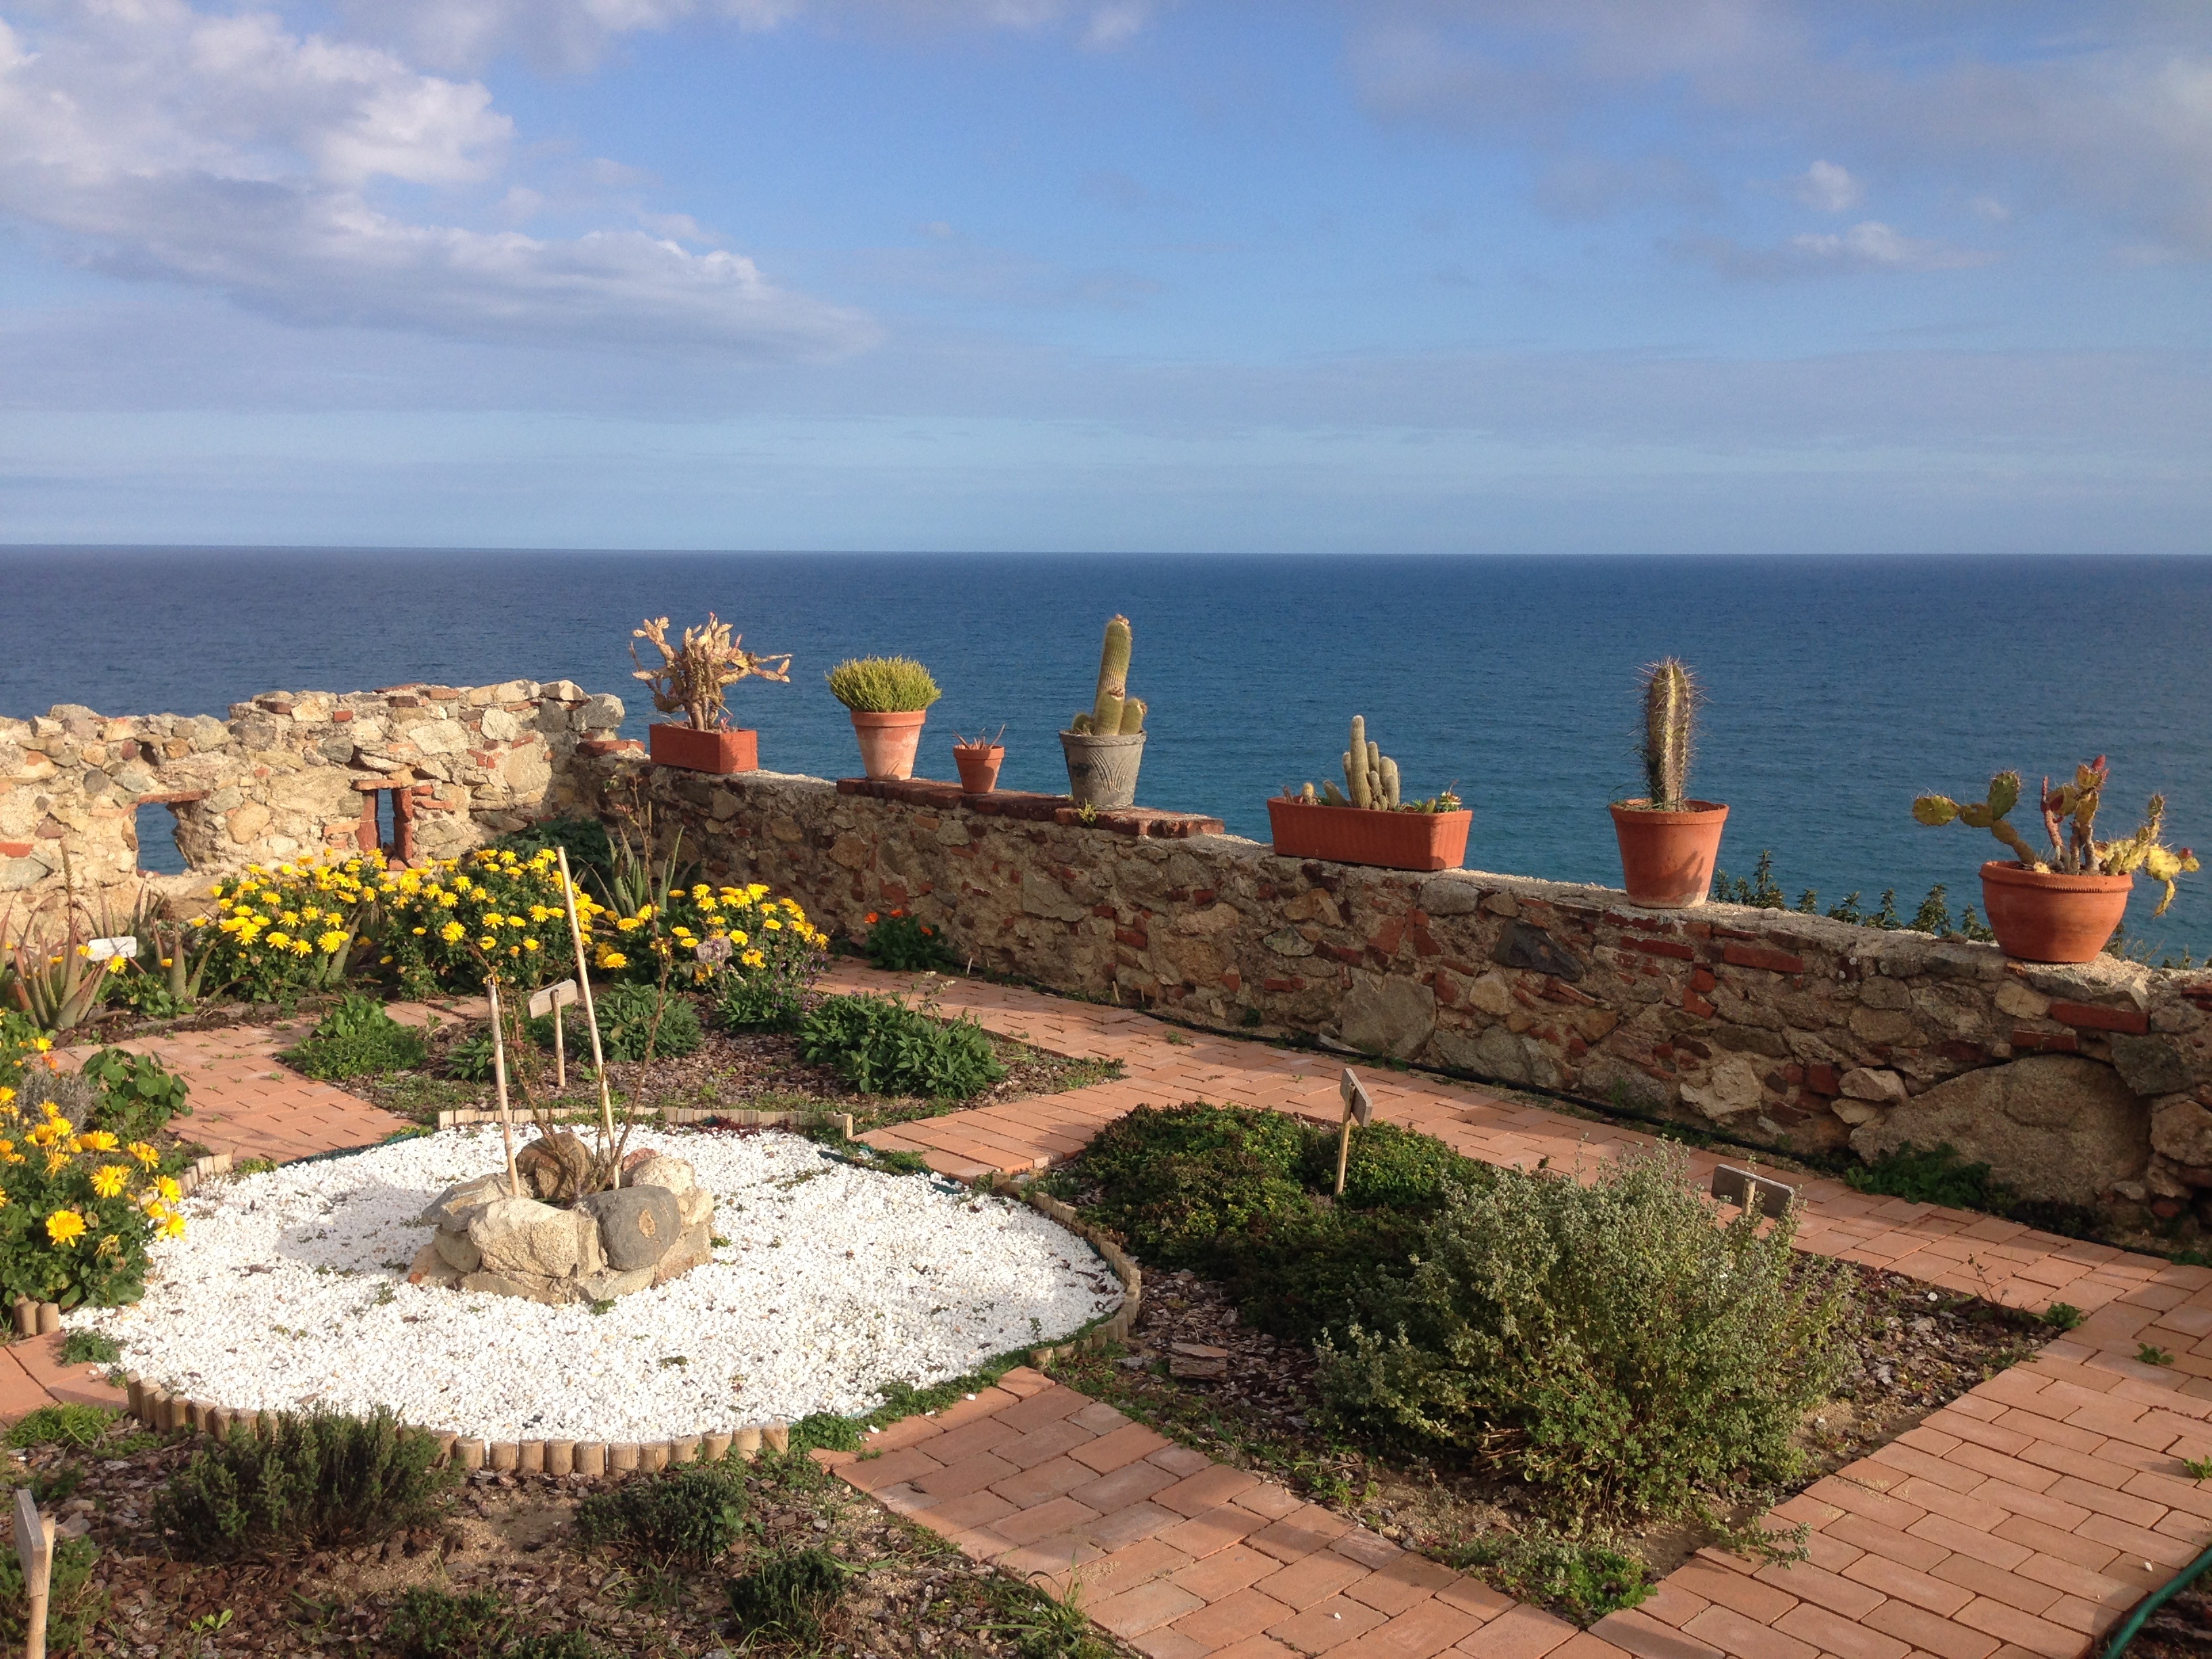 Mediterranean garden by the sea by tiburi